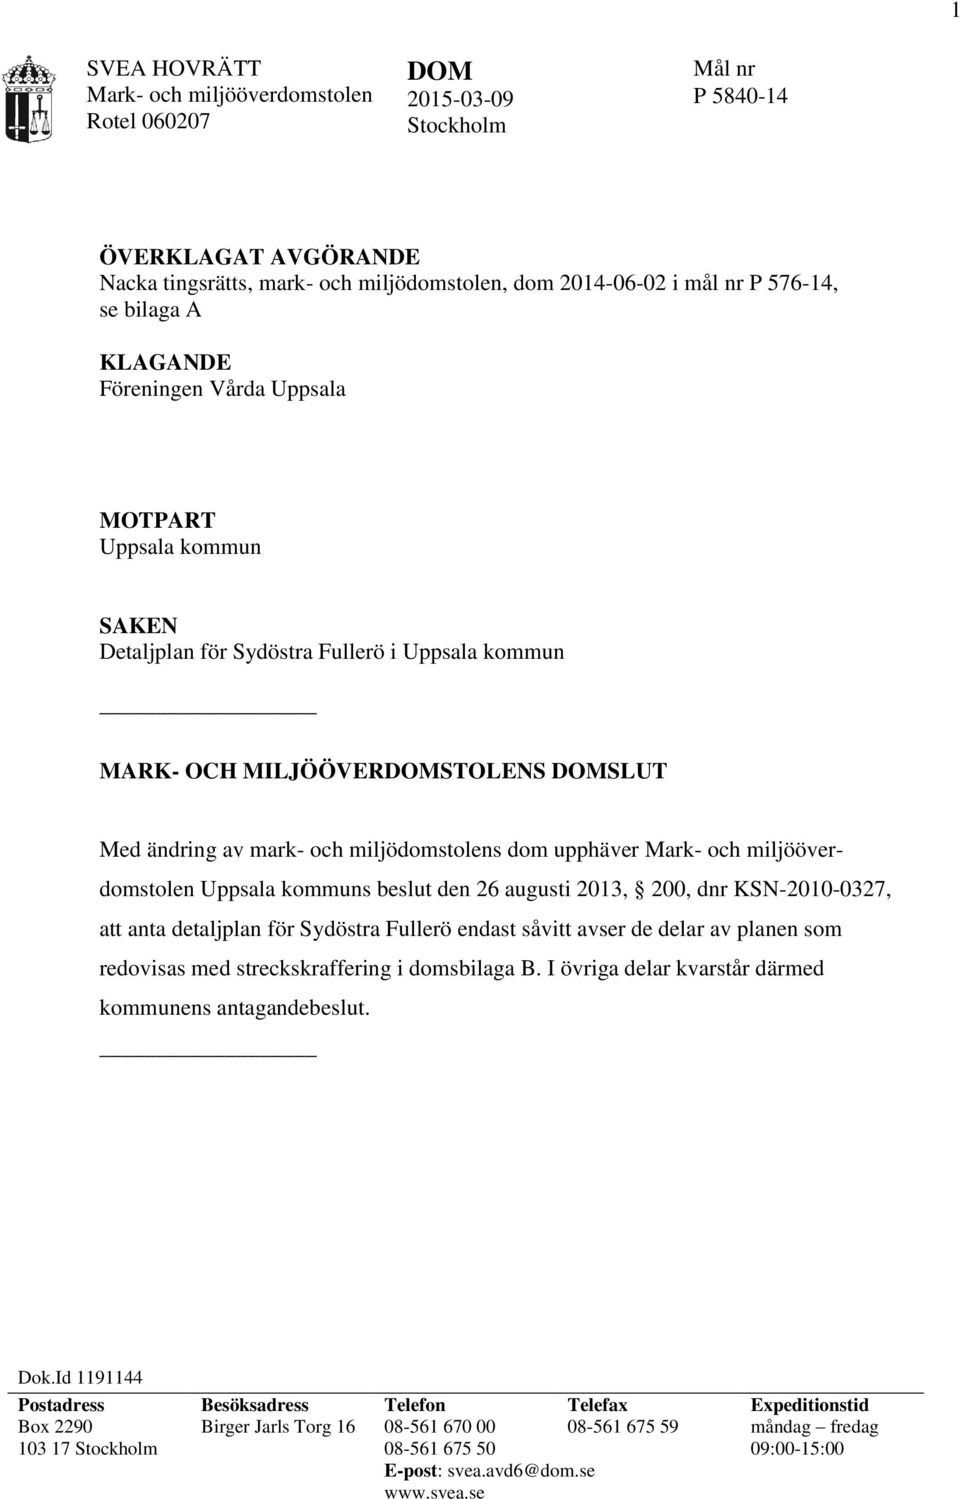 Uppsala kommuns beslut den 26 augusti 2013, 200, dnr KSN-2010-0327, att anta detaljplan för Sydöstra Fullerö endast såvitt avser de delar av planen som redovisas med streckskraffering i domsbilaga B.